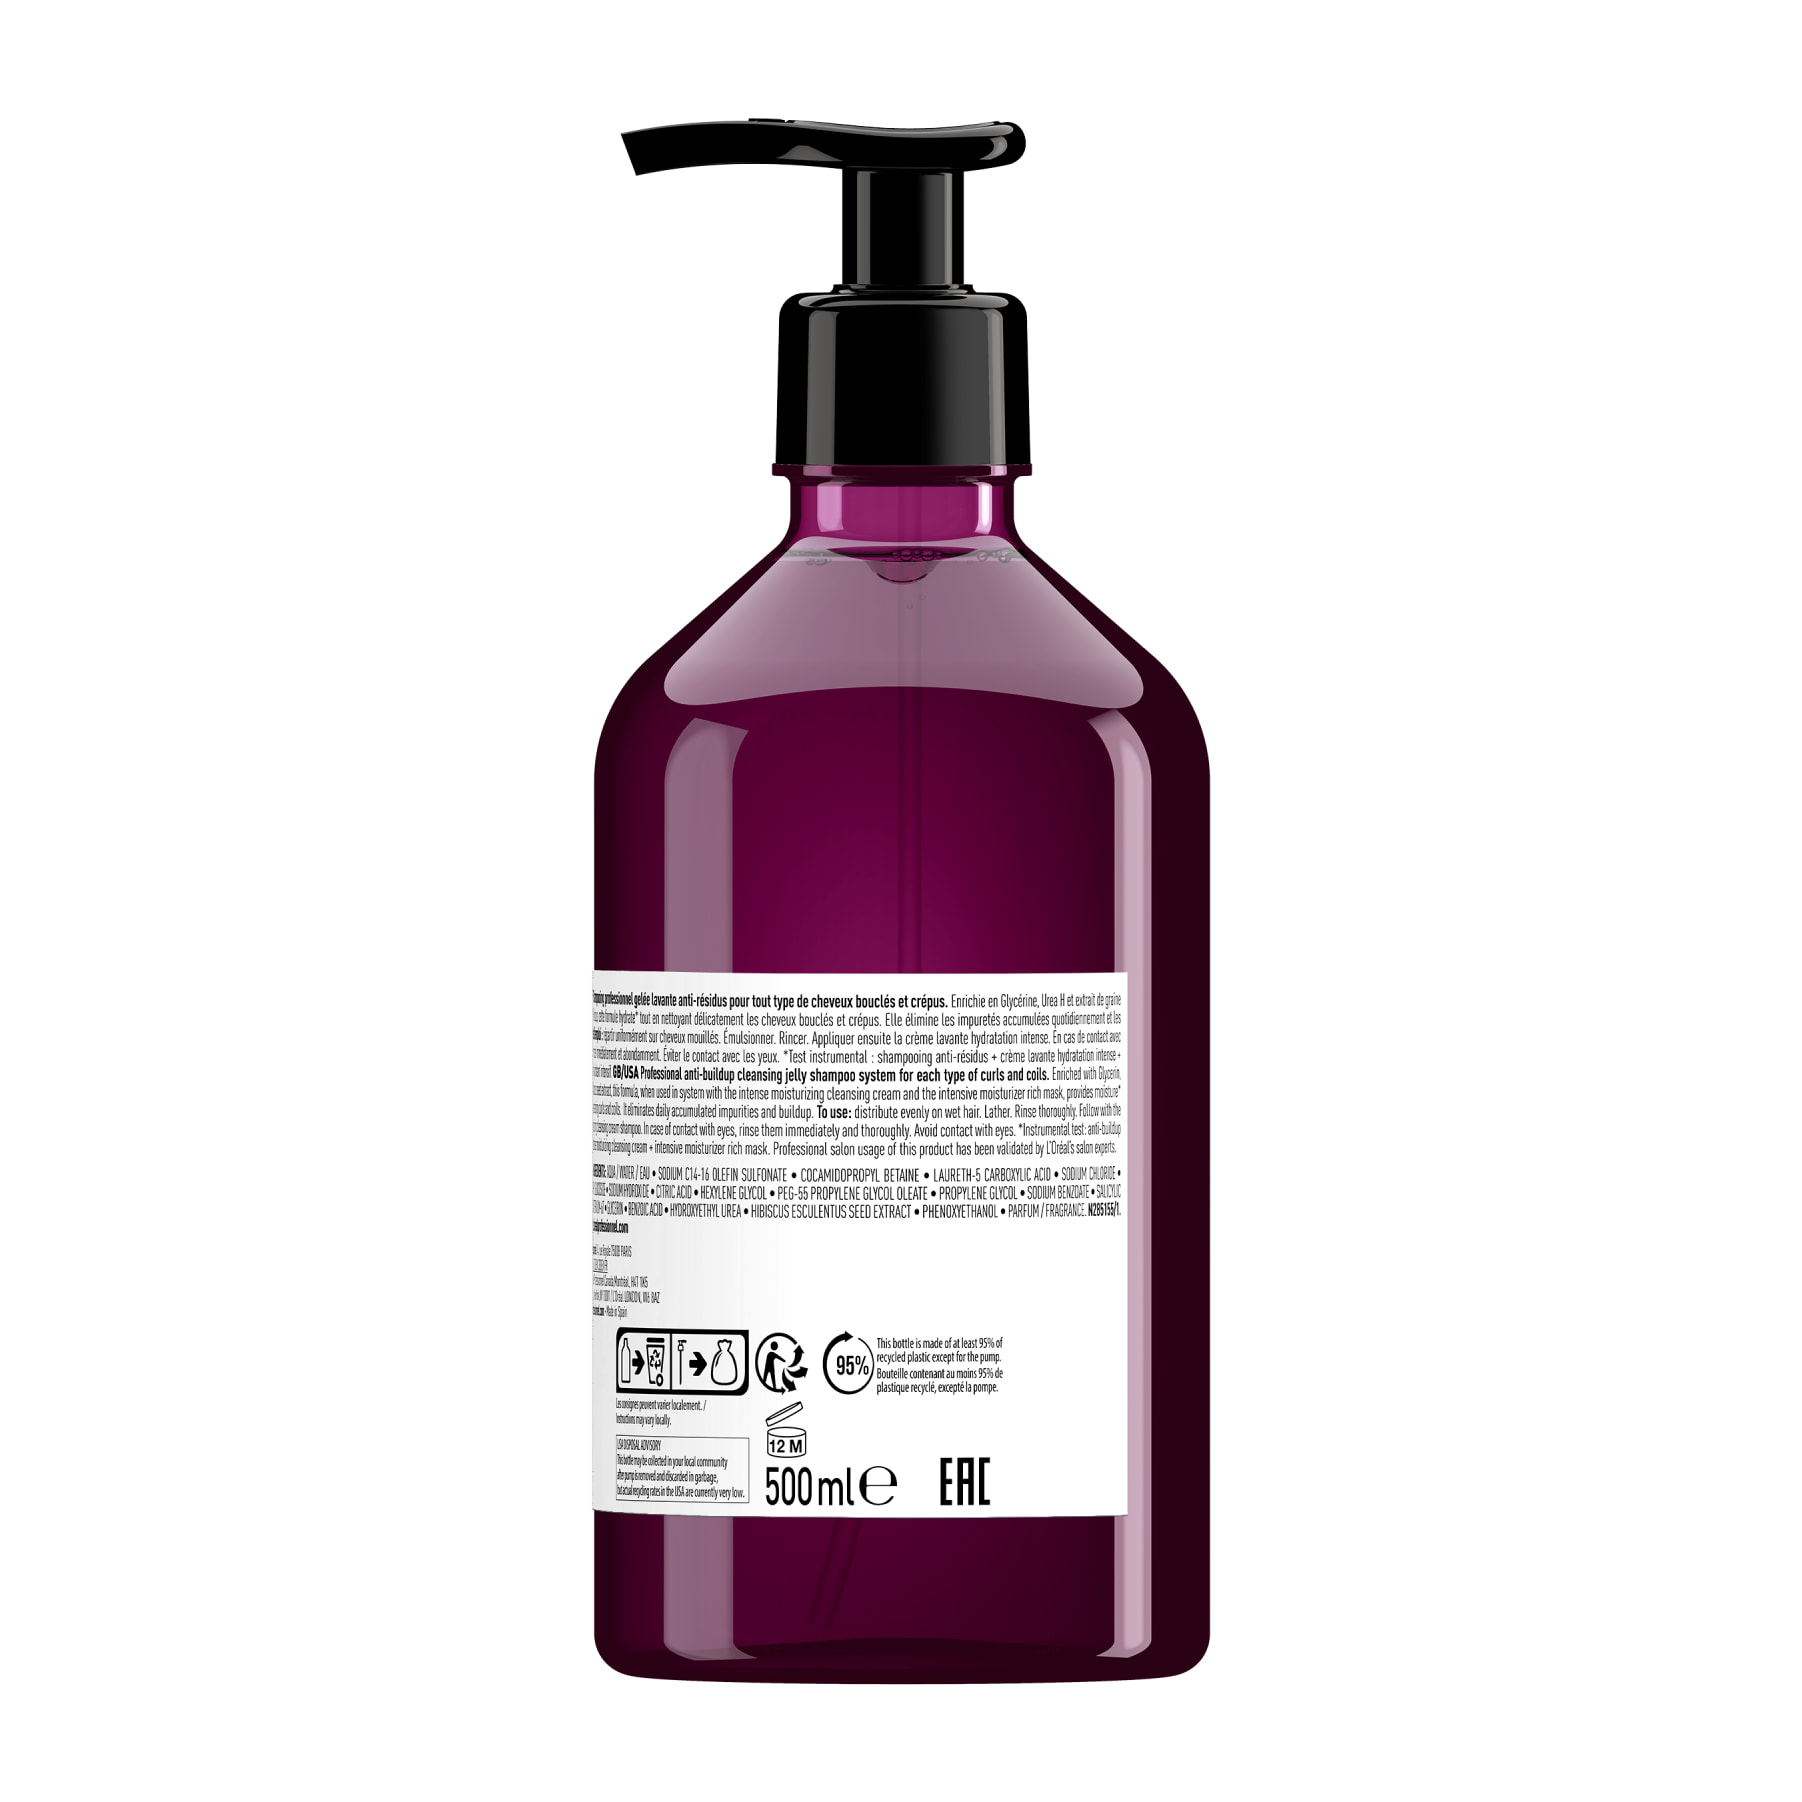 Shampoing en Gelée Curl Expression Cheveux Bouclés à Crépus 500ml - Série Expert